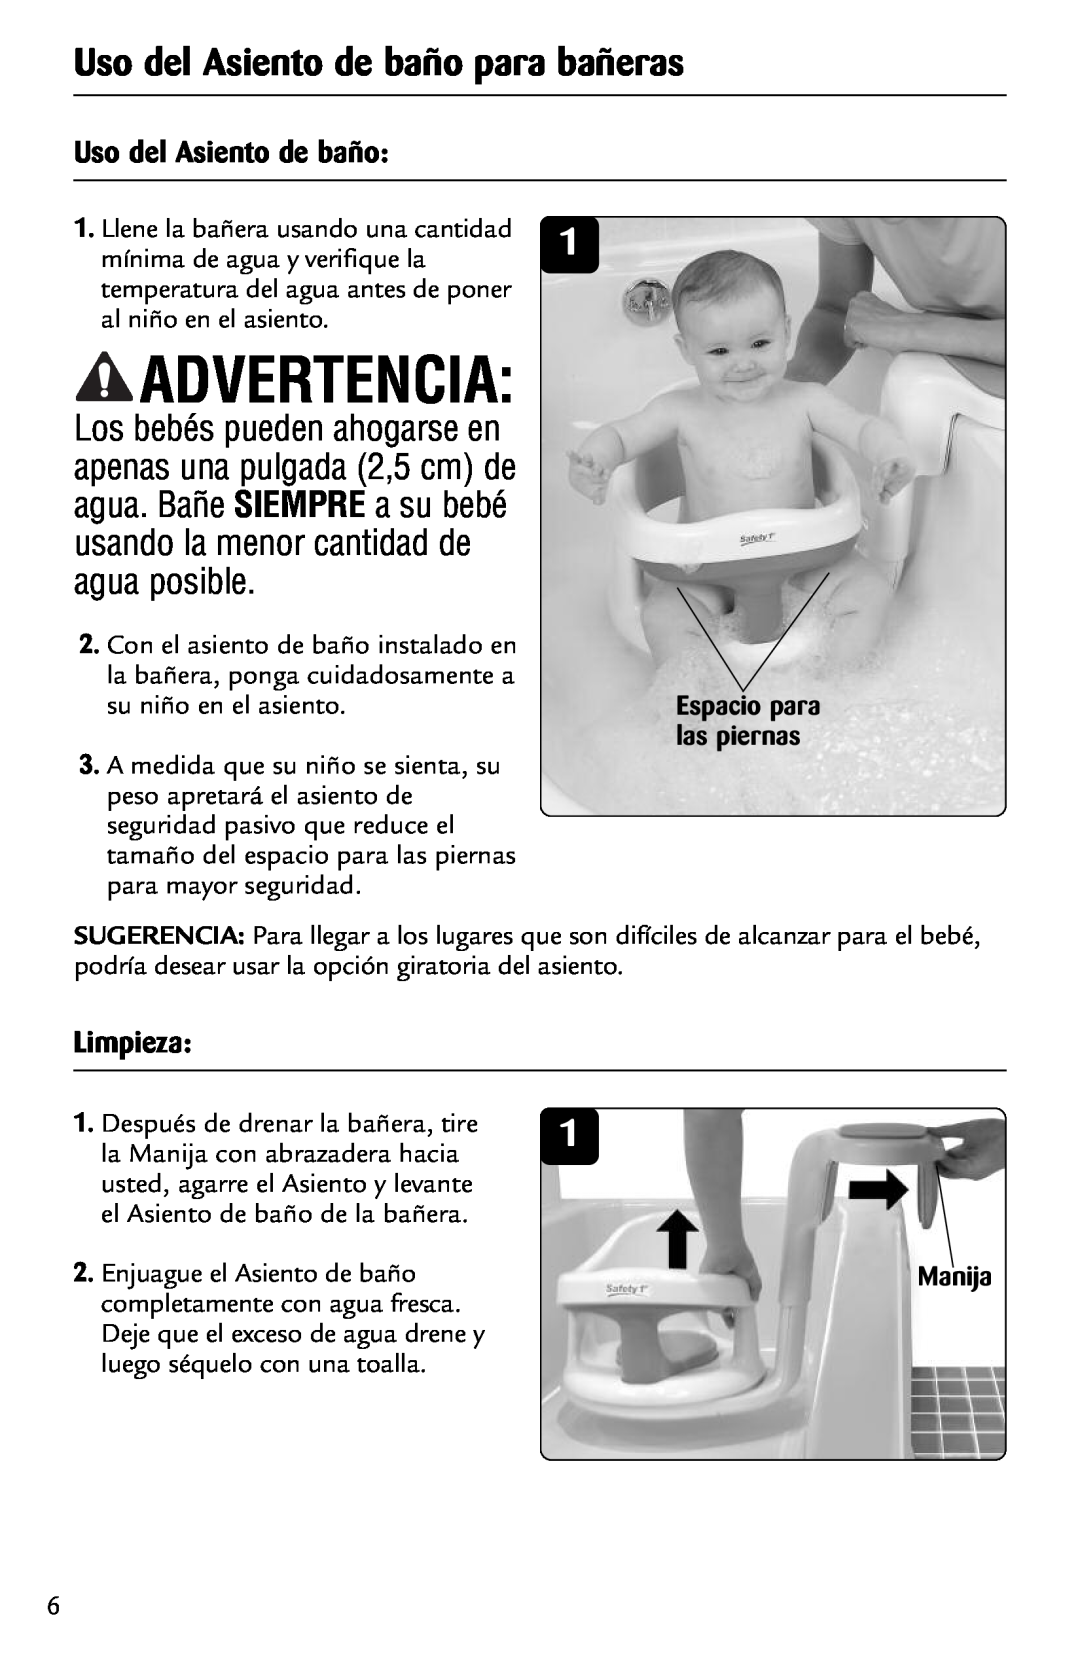 Safety 1st 44301A manual Advertencia, Uso del Asiento de baño para bañeras, Limpieza, Manija 